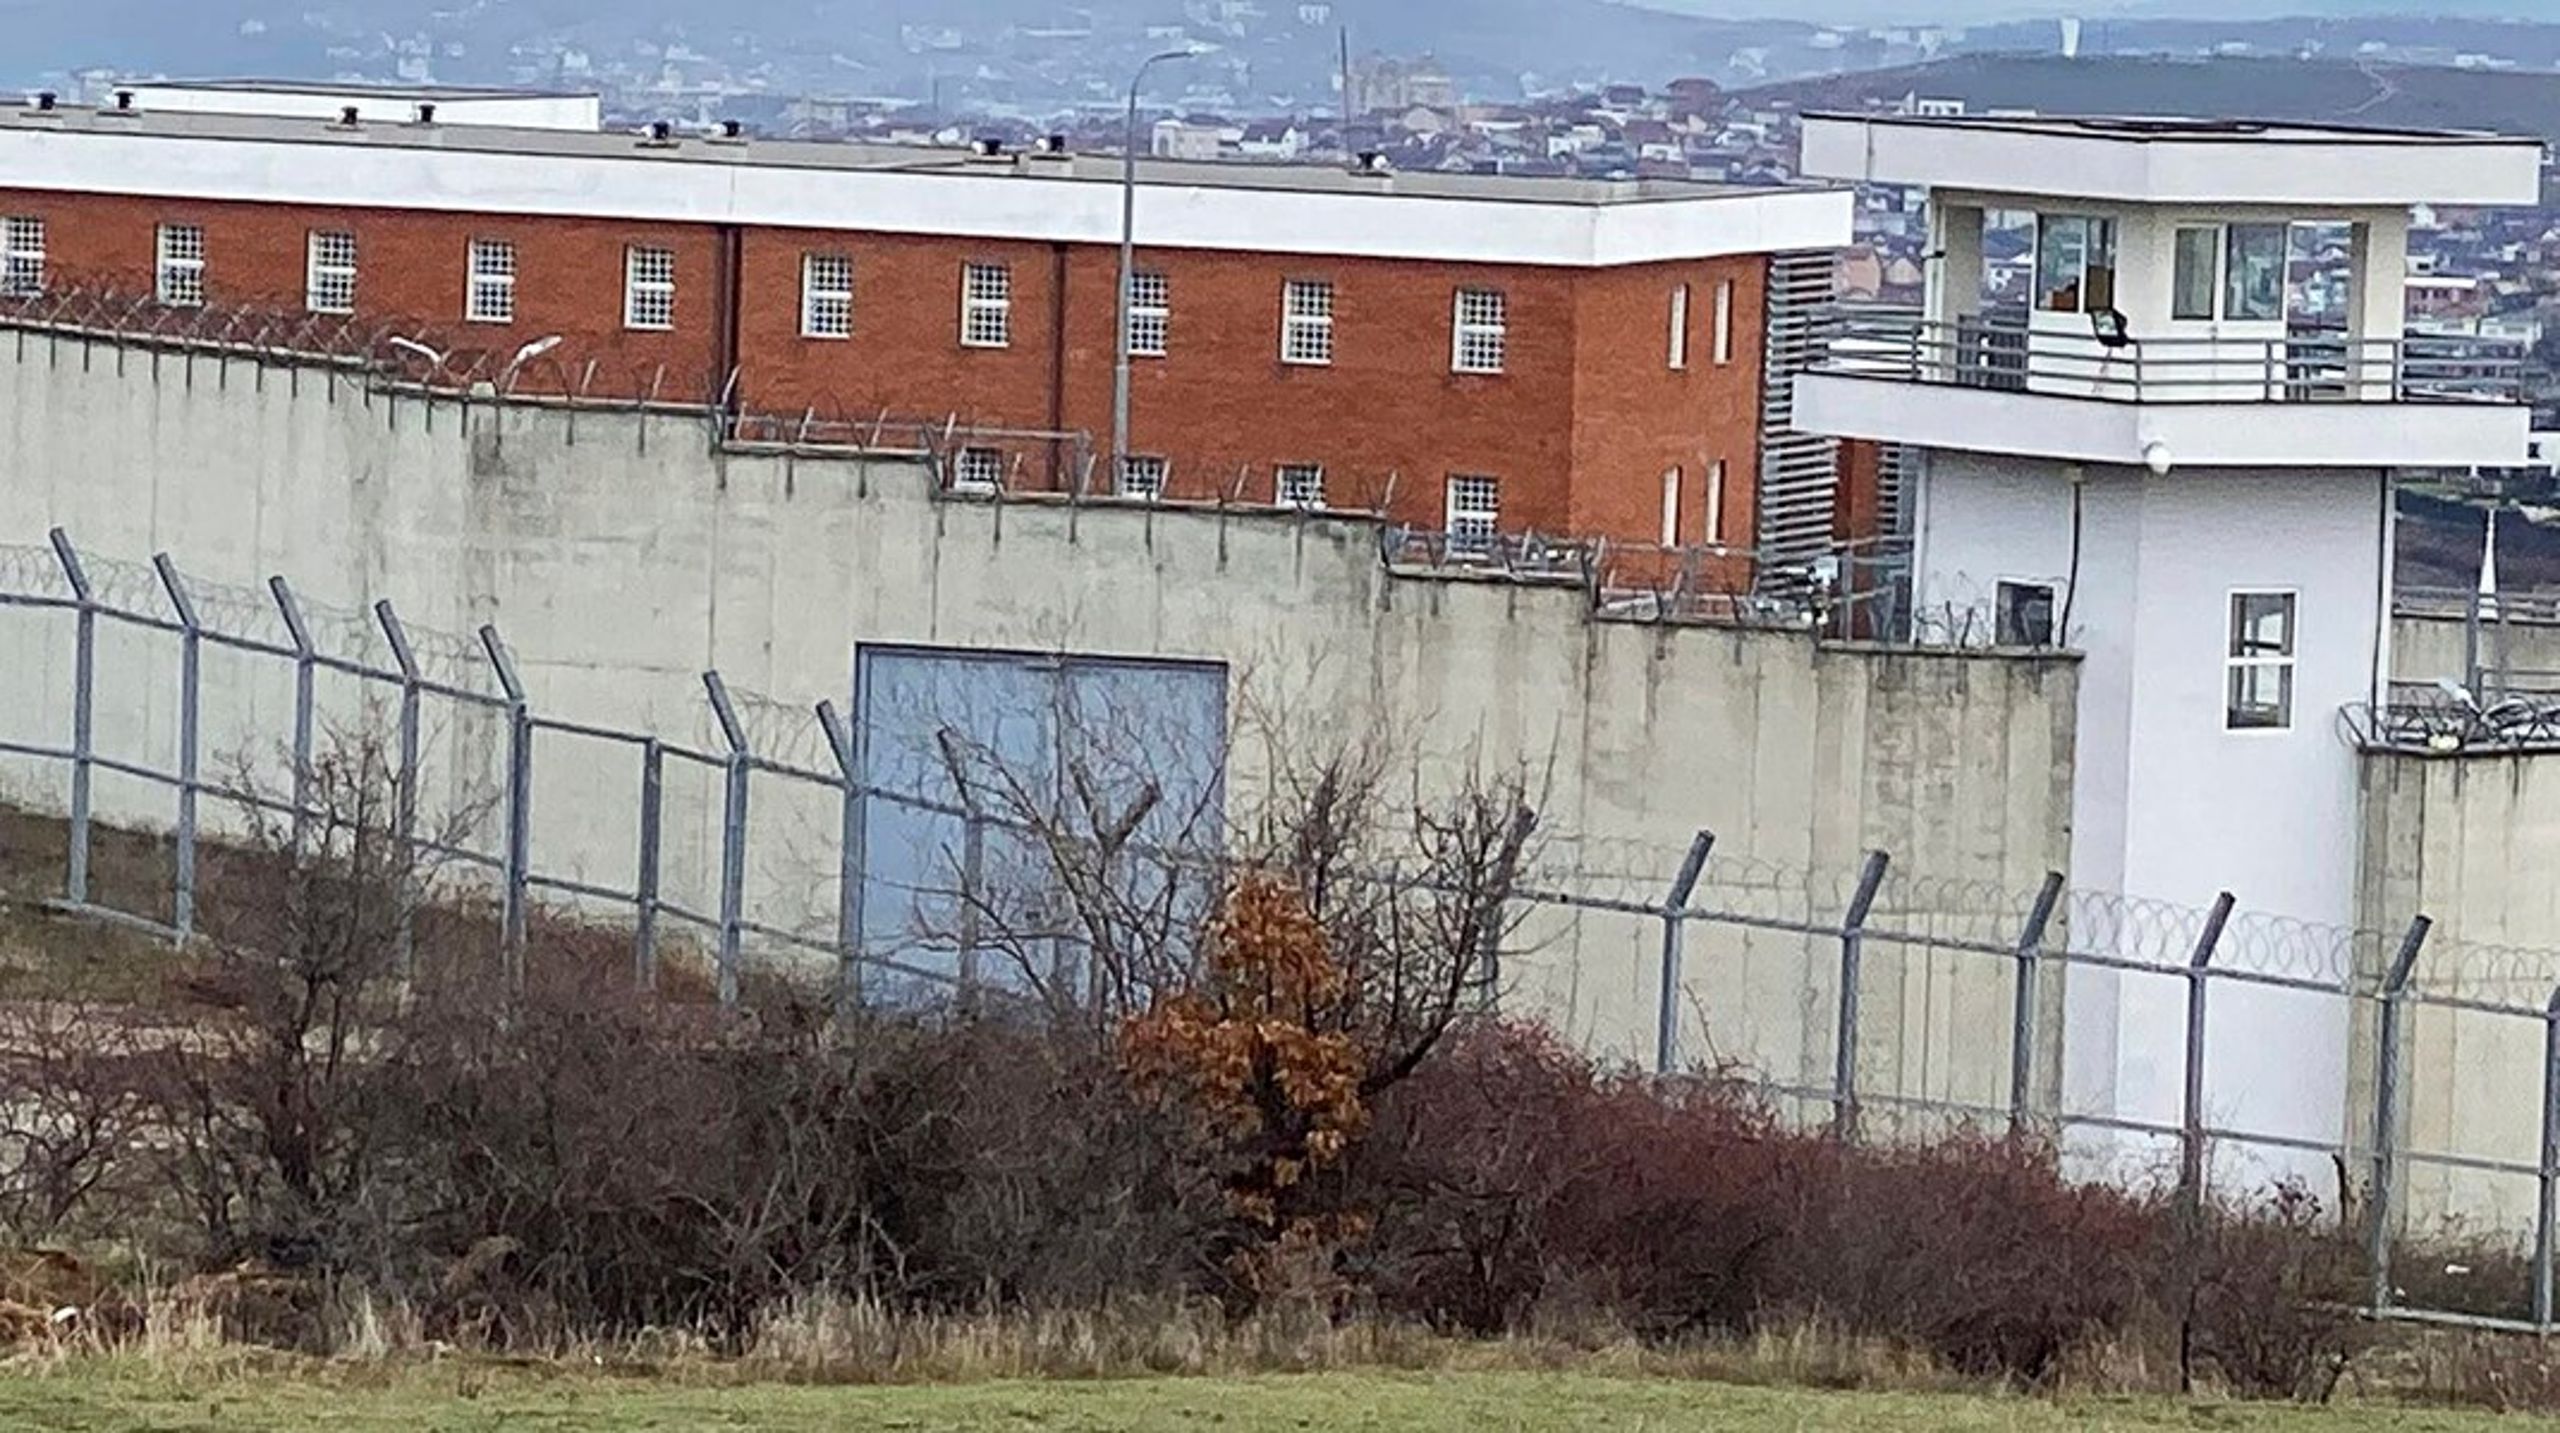 Danmark har indgået aftale med Kosovo om at leje 300 pladser i Gjilan-fængslet. Aftalen mangler fortsat at blive vedtaget i Kosovos parlament, hvorefter renoveringen af fængselscellerne kan begynde.&nbsp;